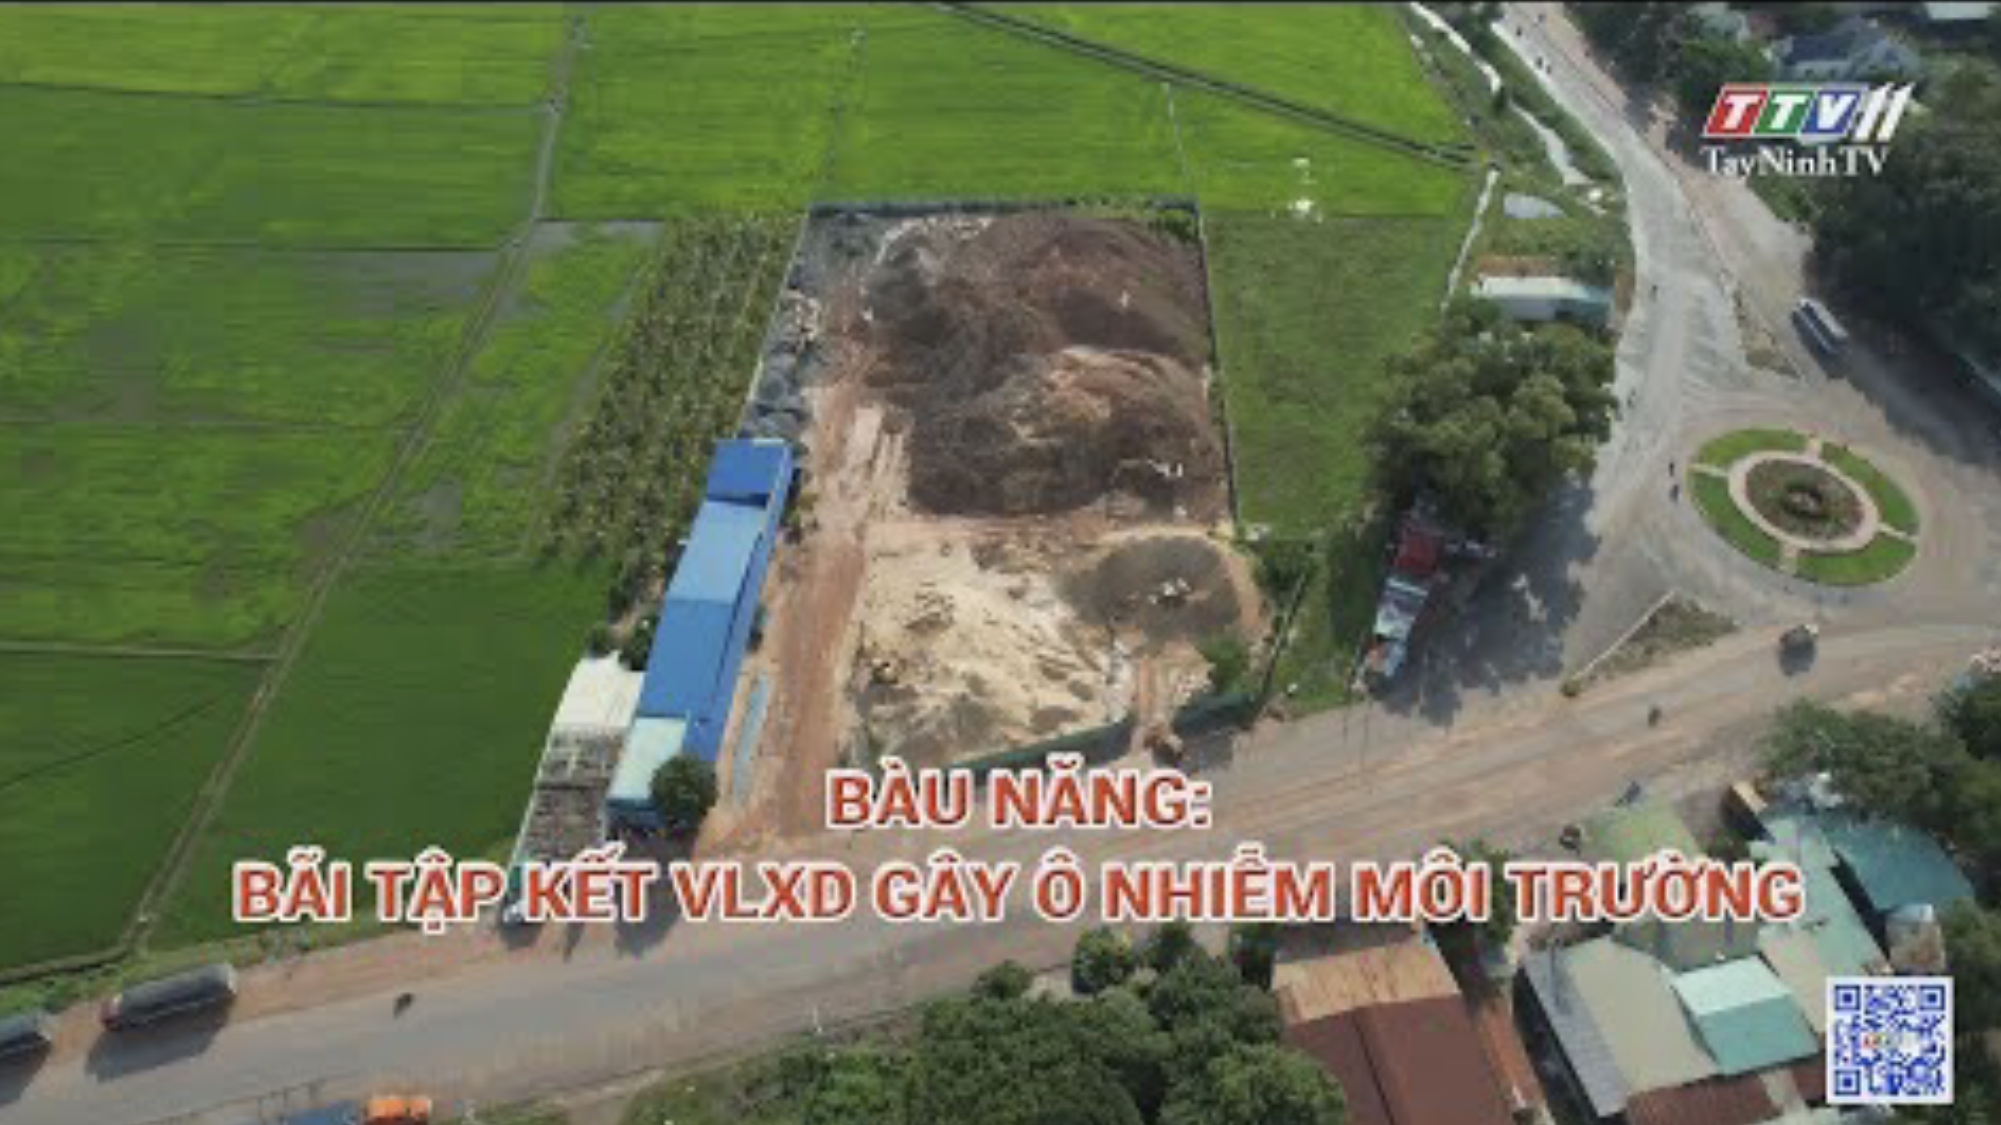 Bàu Năng: bãi tập kết VLXD gây ô nhiễm môi trường | Hộp thư truyền hình | TayNinhTV